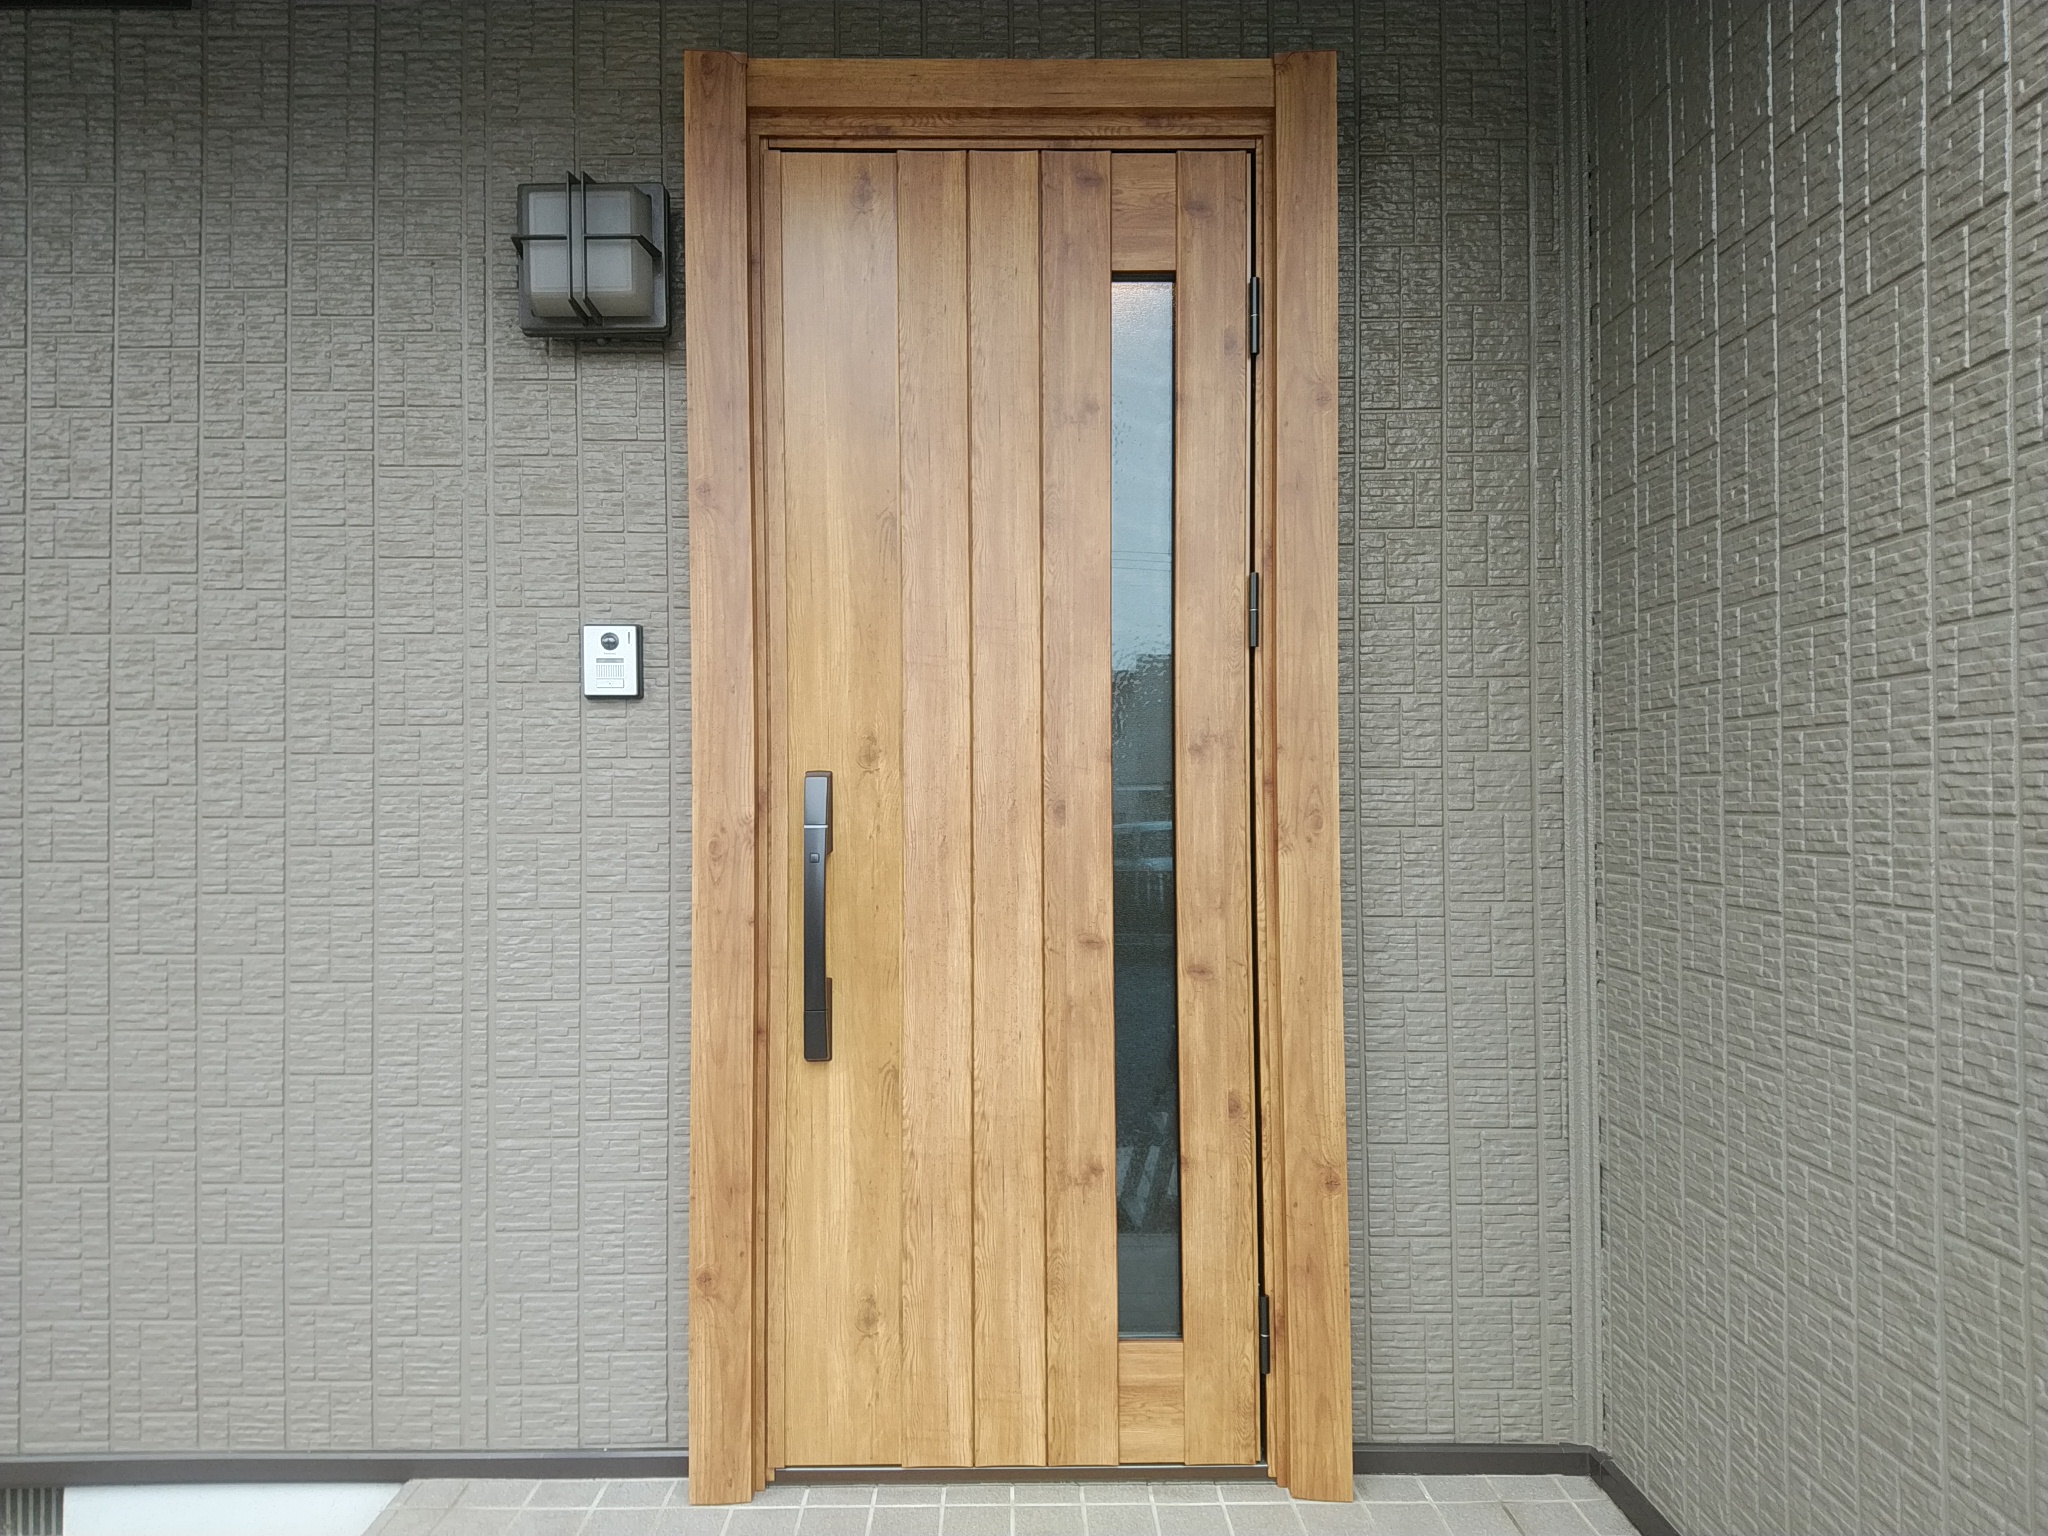 セキスイハイムの玄関ドアの木目シートが剝がれていました Ykkapドアリモn05t 和光市の工事事例 玄関ドアリフォームの玄関ドアマイスター